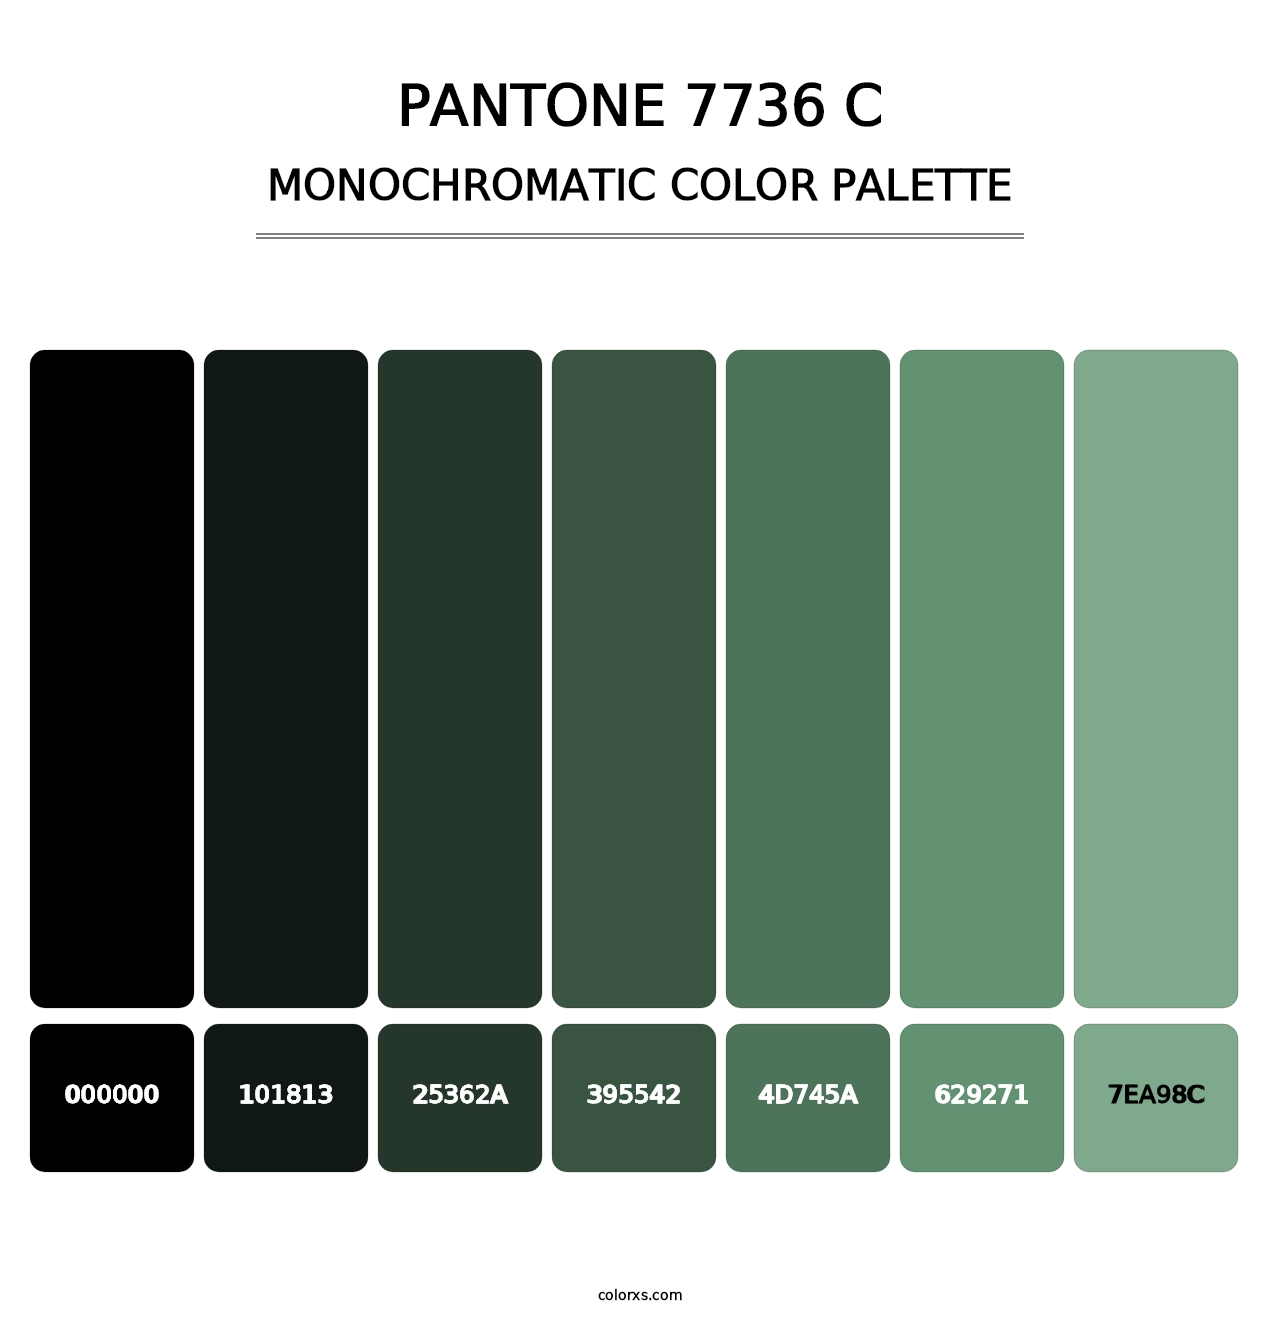 PANTONE 7736 C - Monochromatic Color Palette